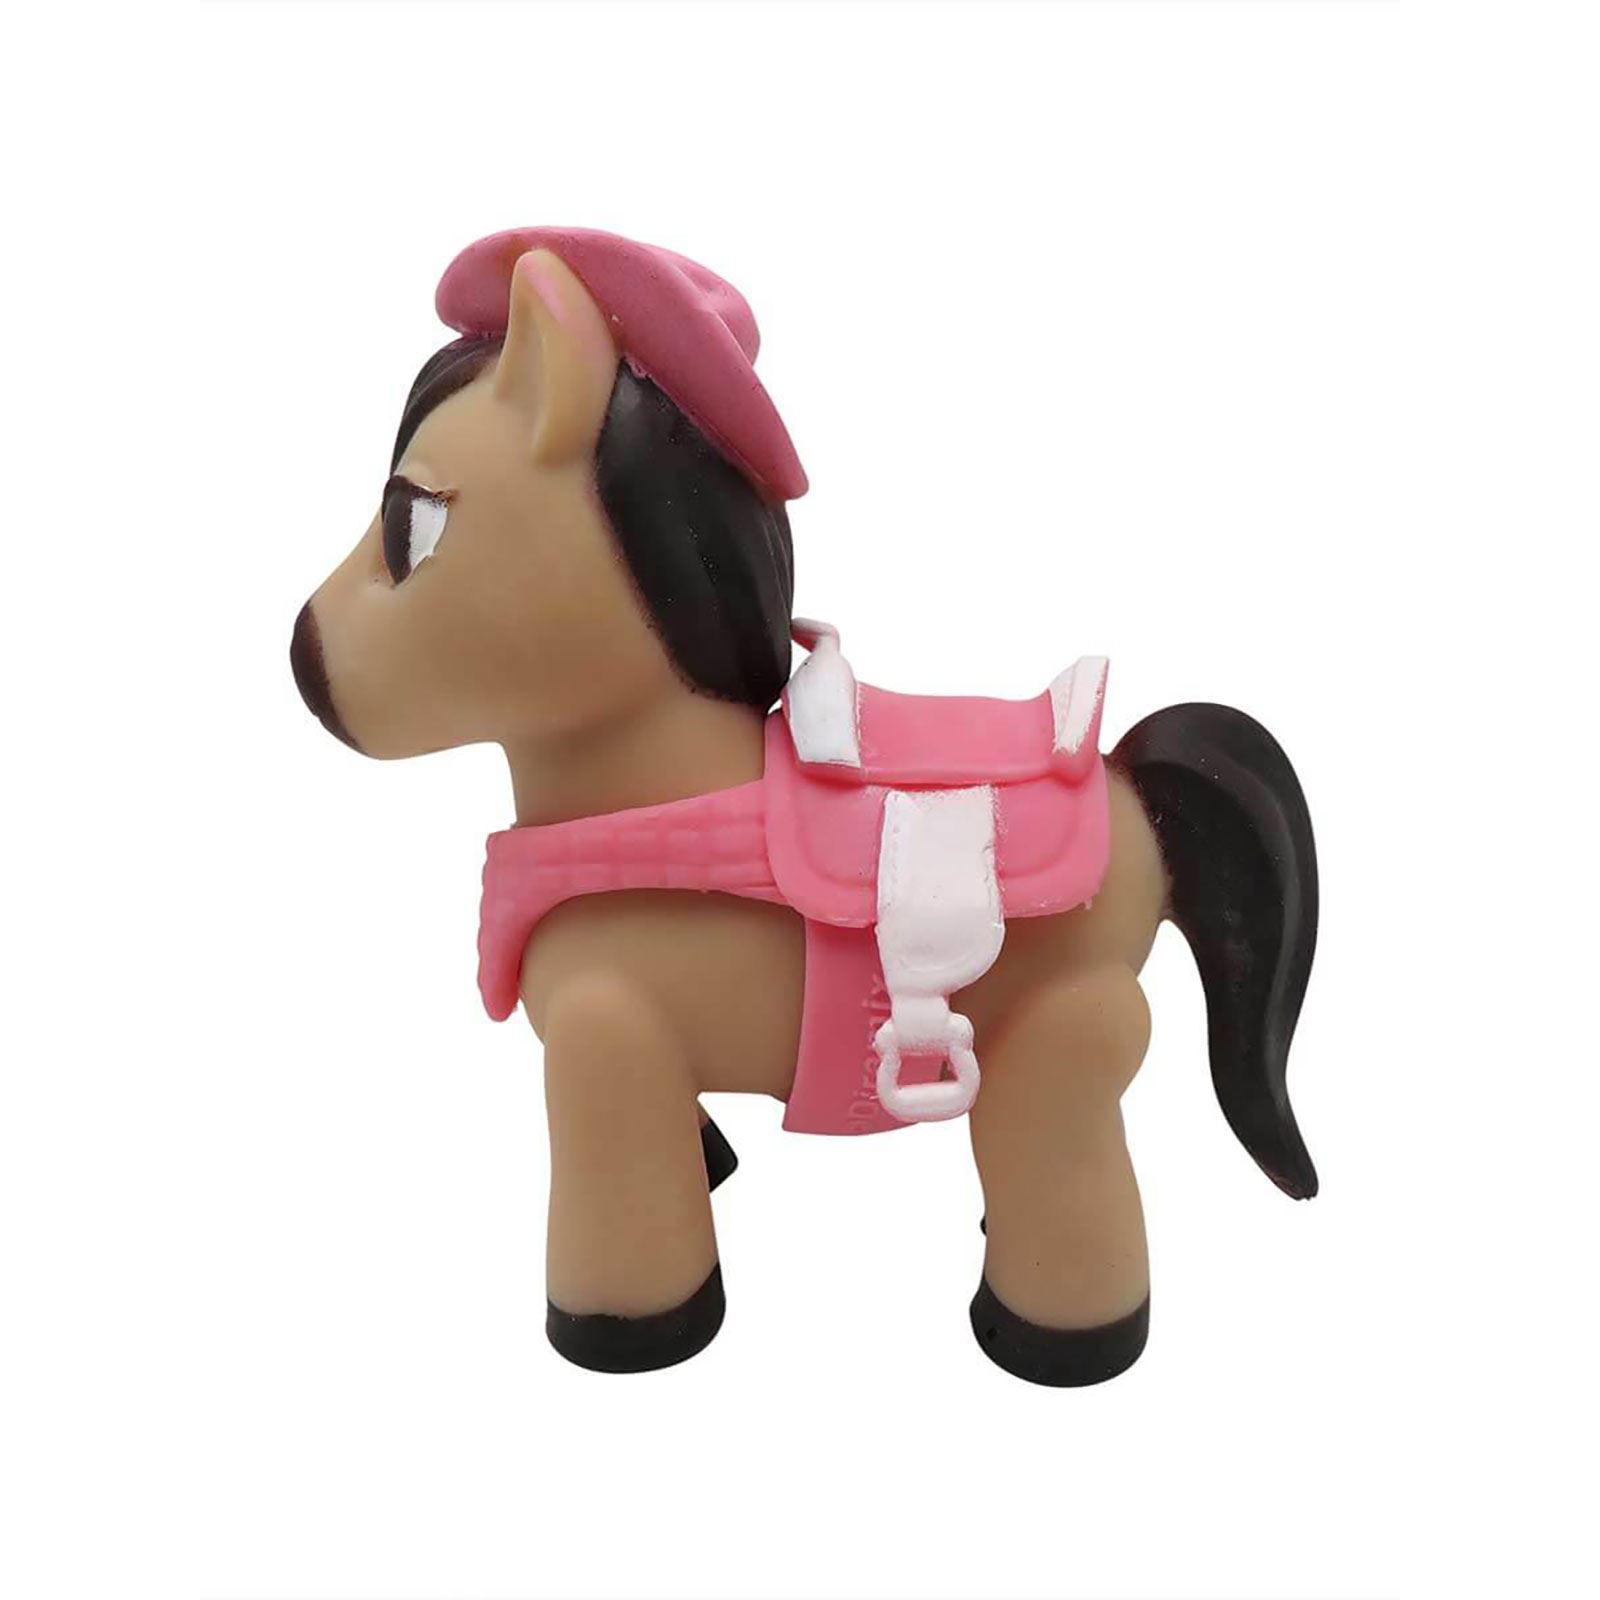 Sunman Oyuncak Diramix Dress Your Pony Kostümlü Figürler - Dolly Sütlü Kahve